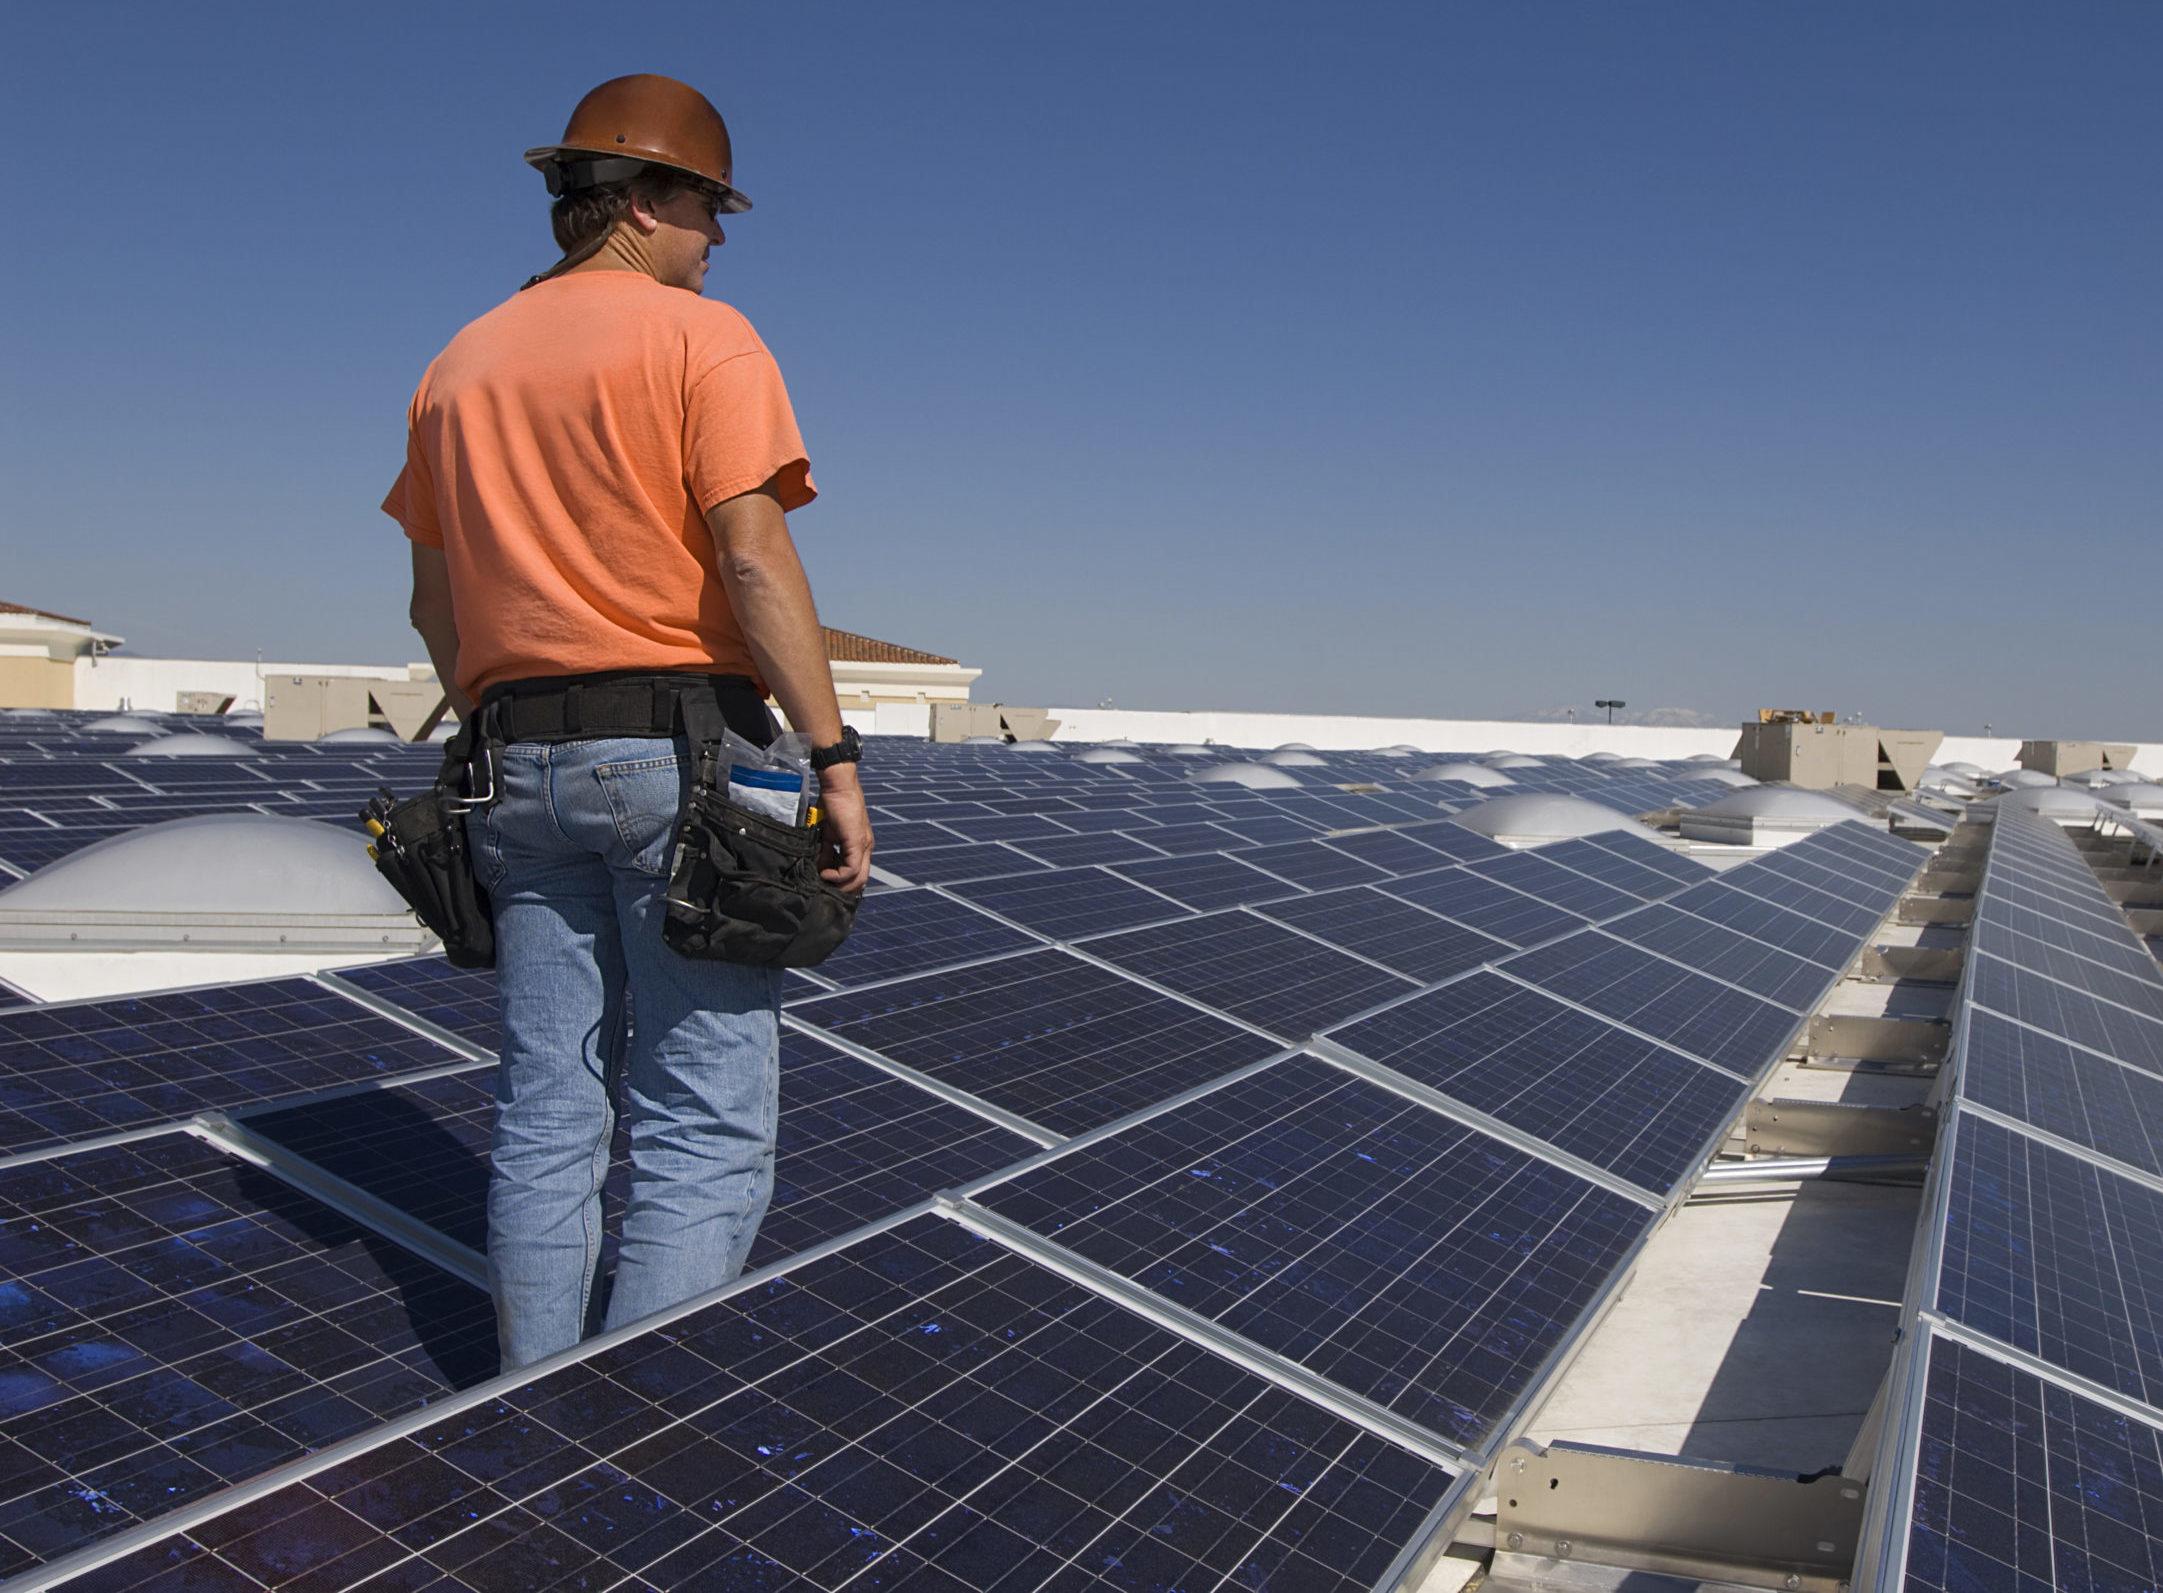 10 Top Online Schools for Solar Energy Technicians